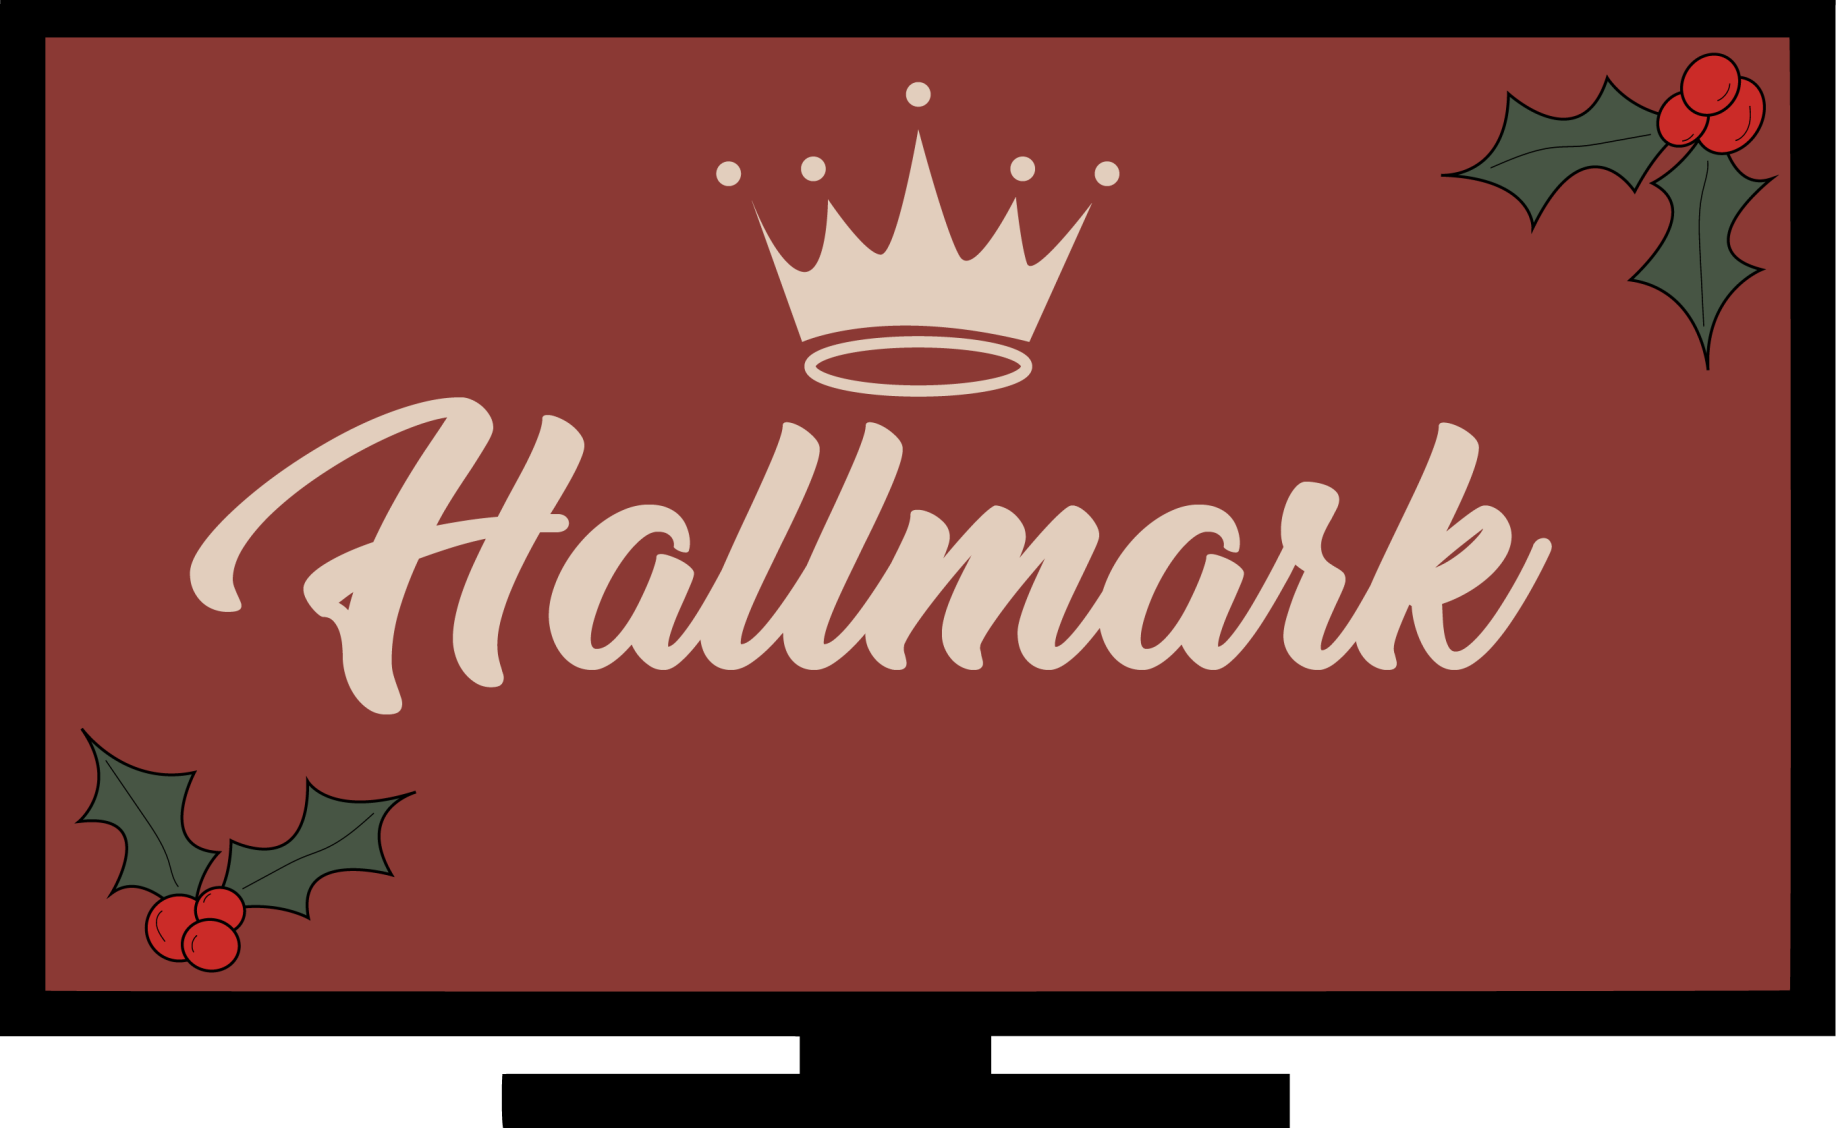 hallmark movies production company